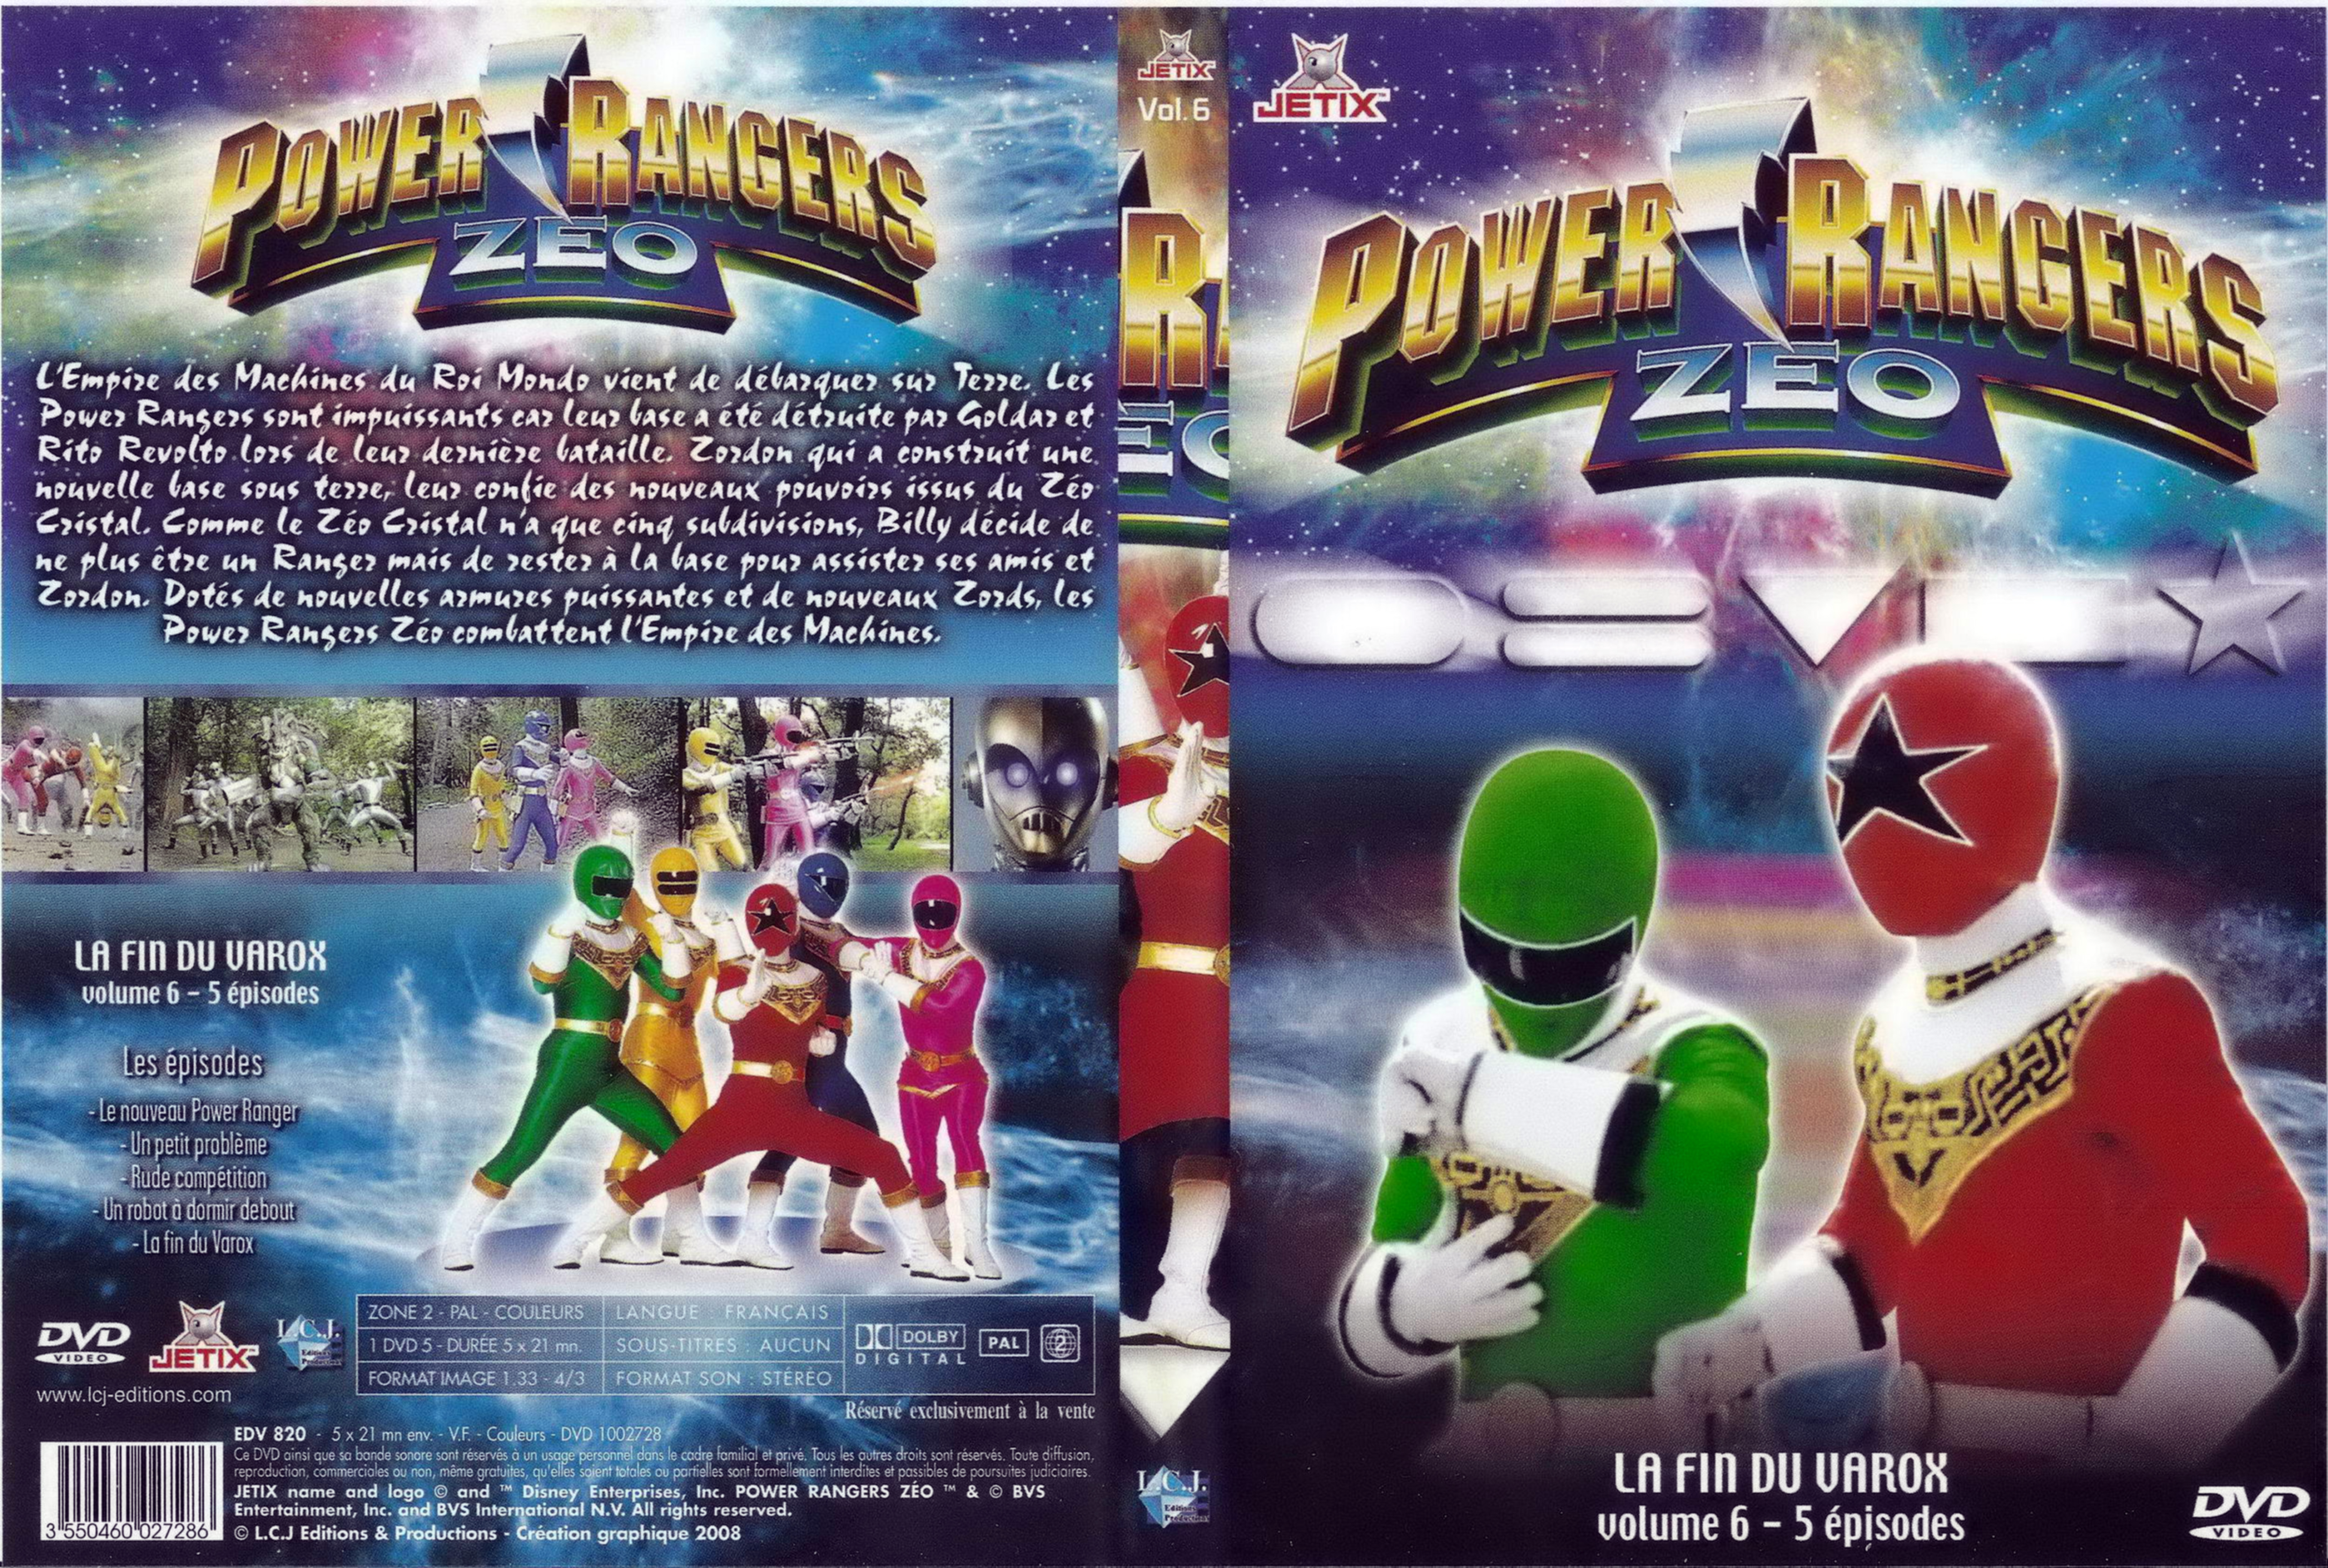 Jaquette DVD Power rangers zeo vol 6